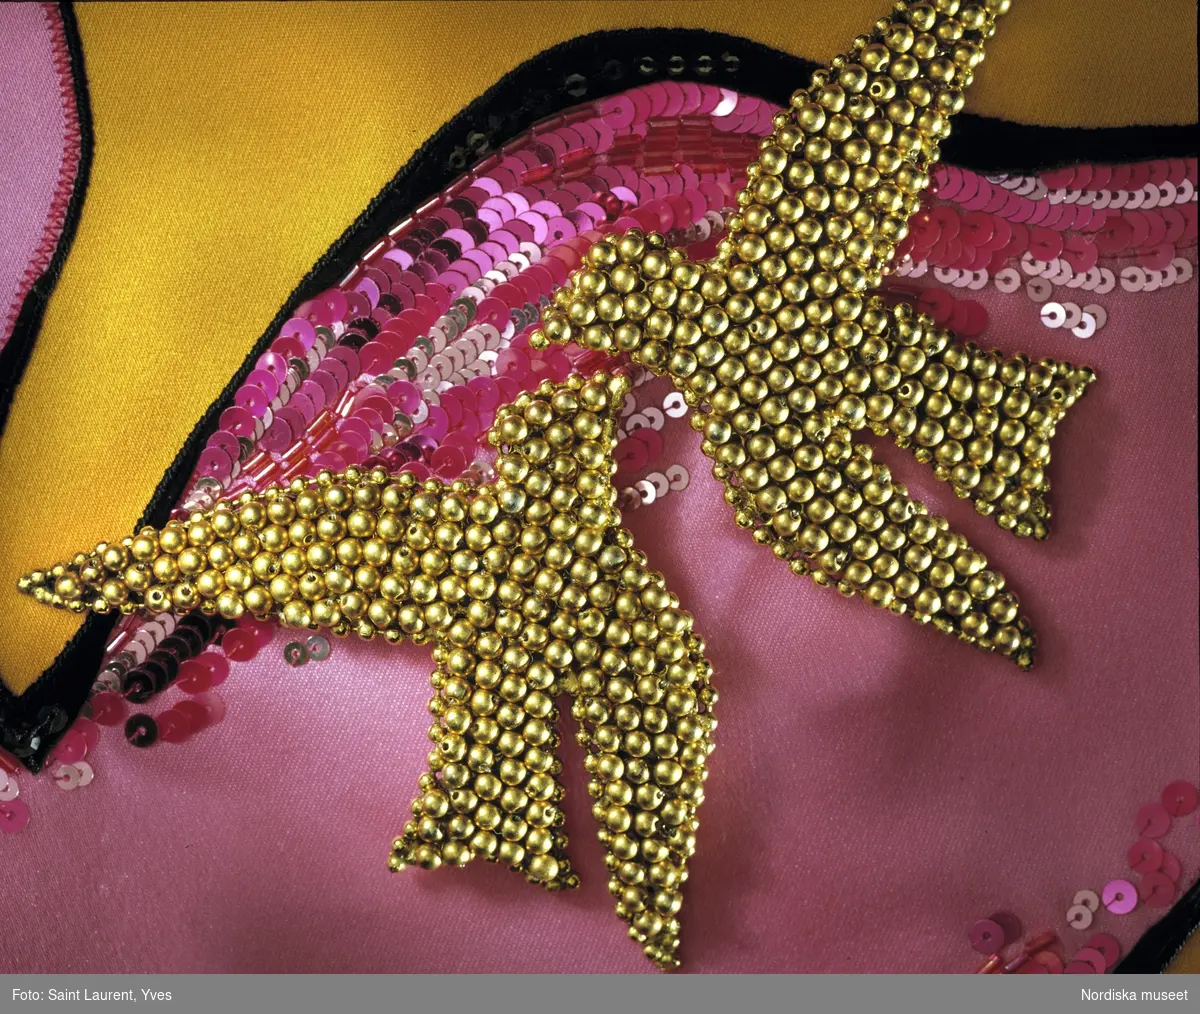 Hellång aftonklänning med axelbandslöst liv av sidenduchesse. Livet ceriserosa, kjolen orangegul med applikationer i form av stiliserade fåglar i rosa siden prydda med paljetter och pärlbroderi. Från Yves Saint Laurents vårkollektion 1988. Nordiska museet inv nr 318887.